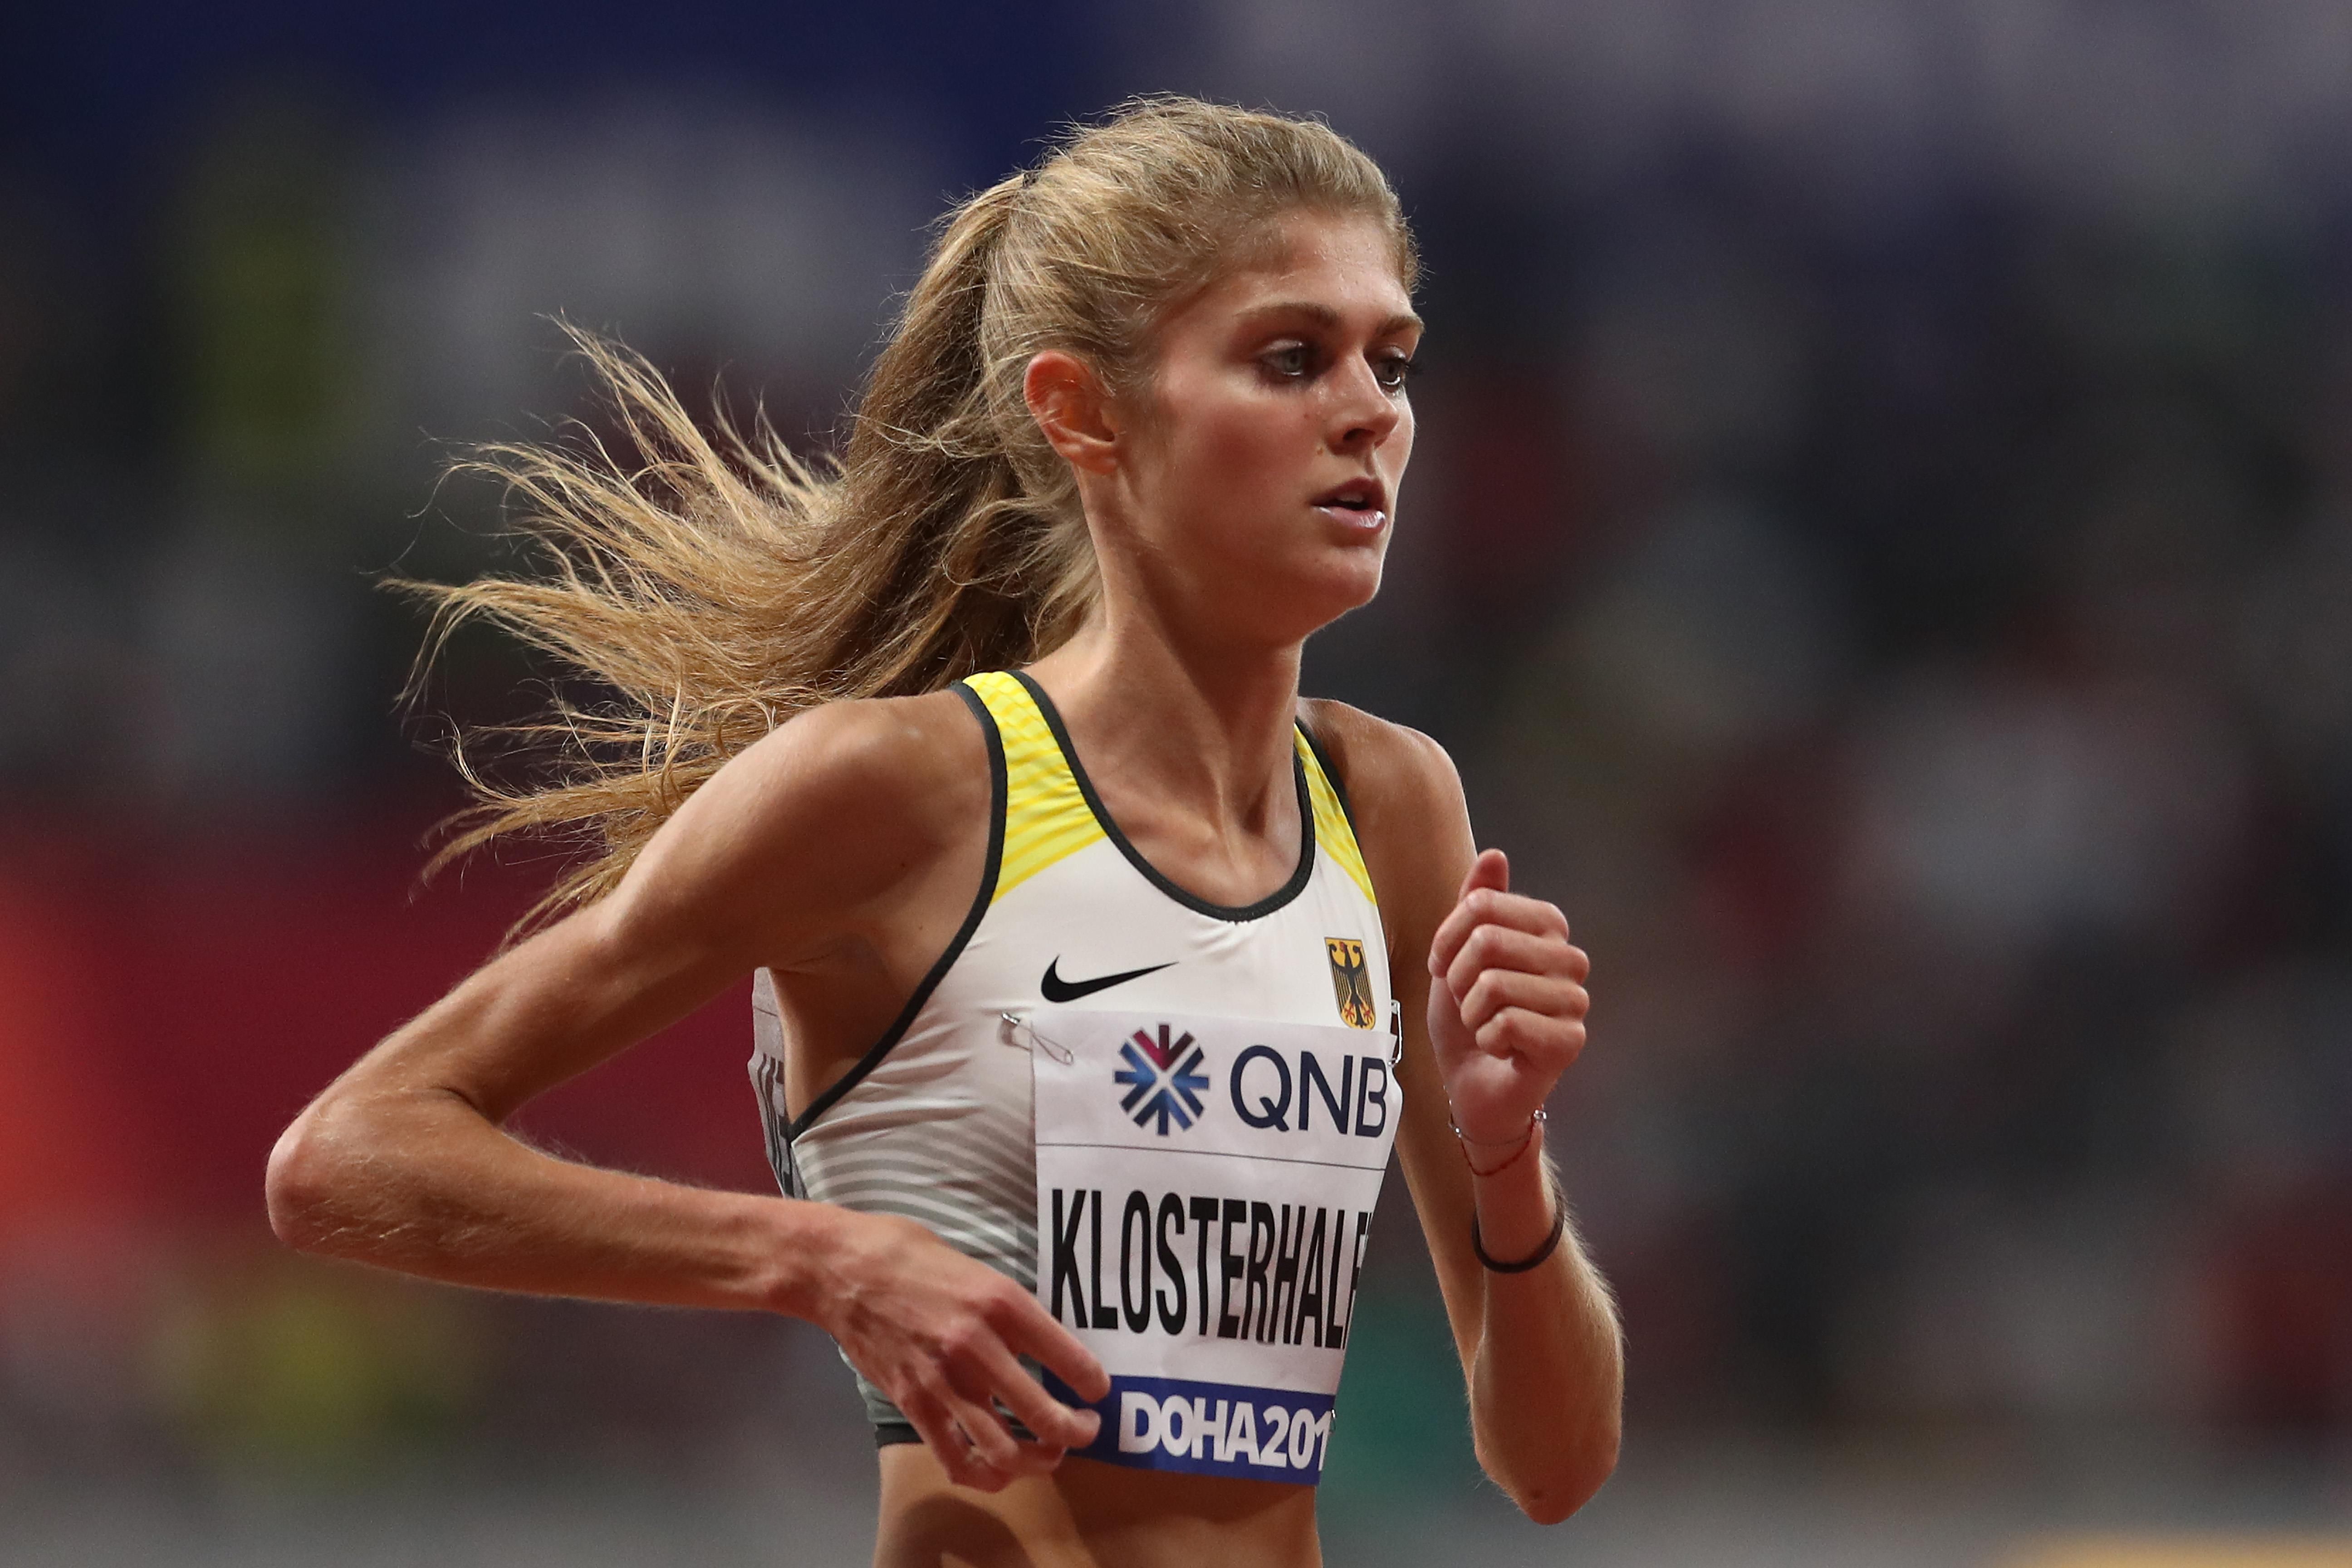 Konstanze KLOSTERHALFEN | Profile | World Athletics